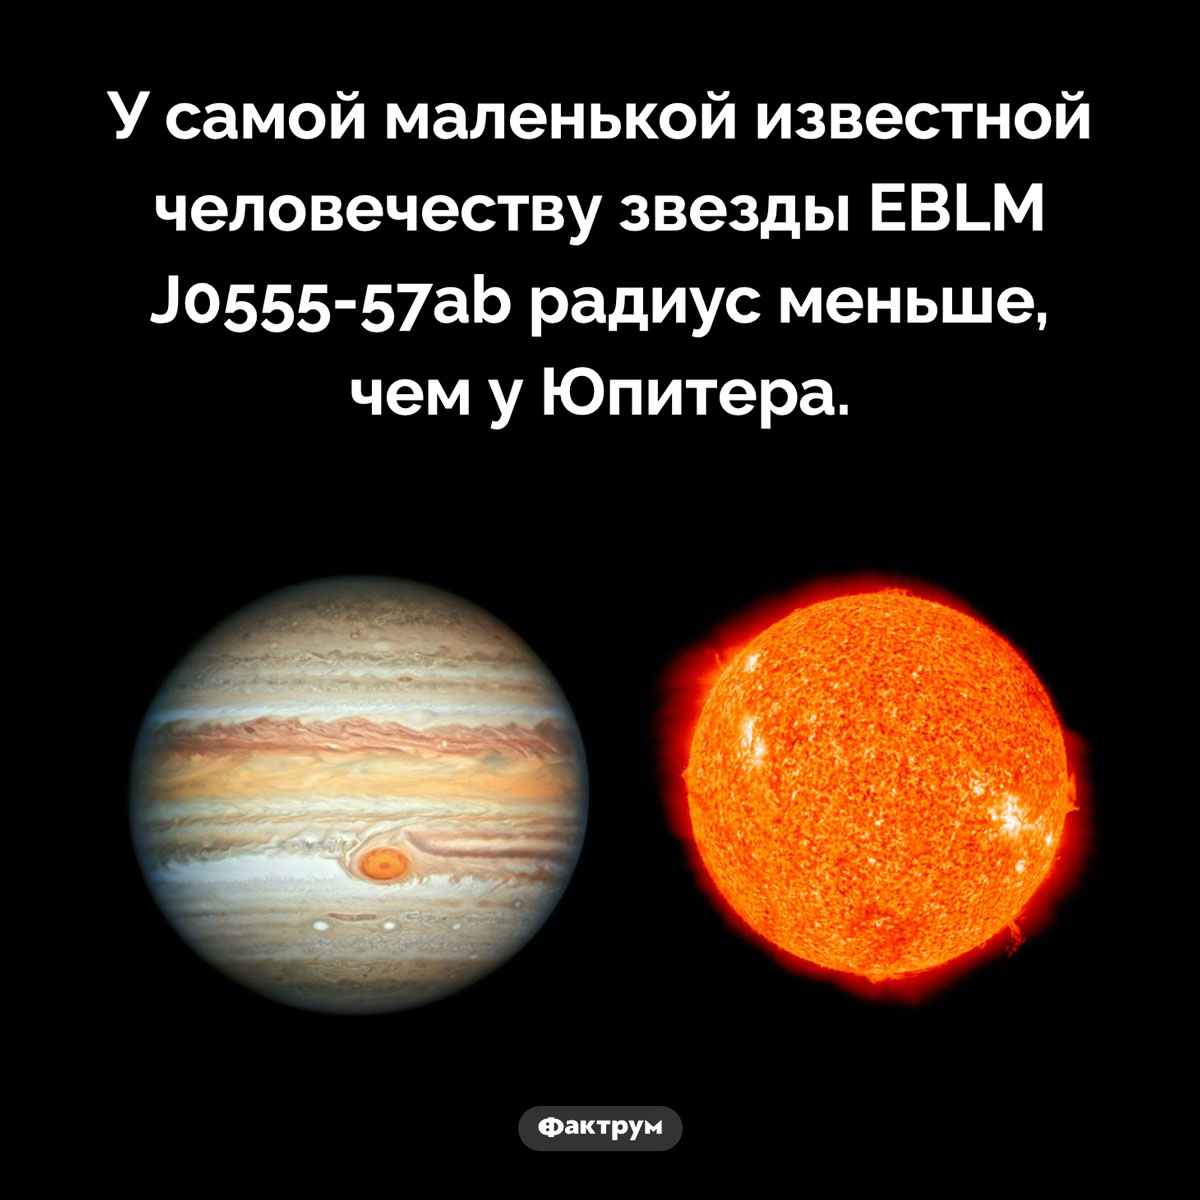 Самая маленькая звезда. У самой маленькой известной человечеству звезды EBLM J0555-57ab радиус меньше, чем у Юпитера.